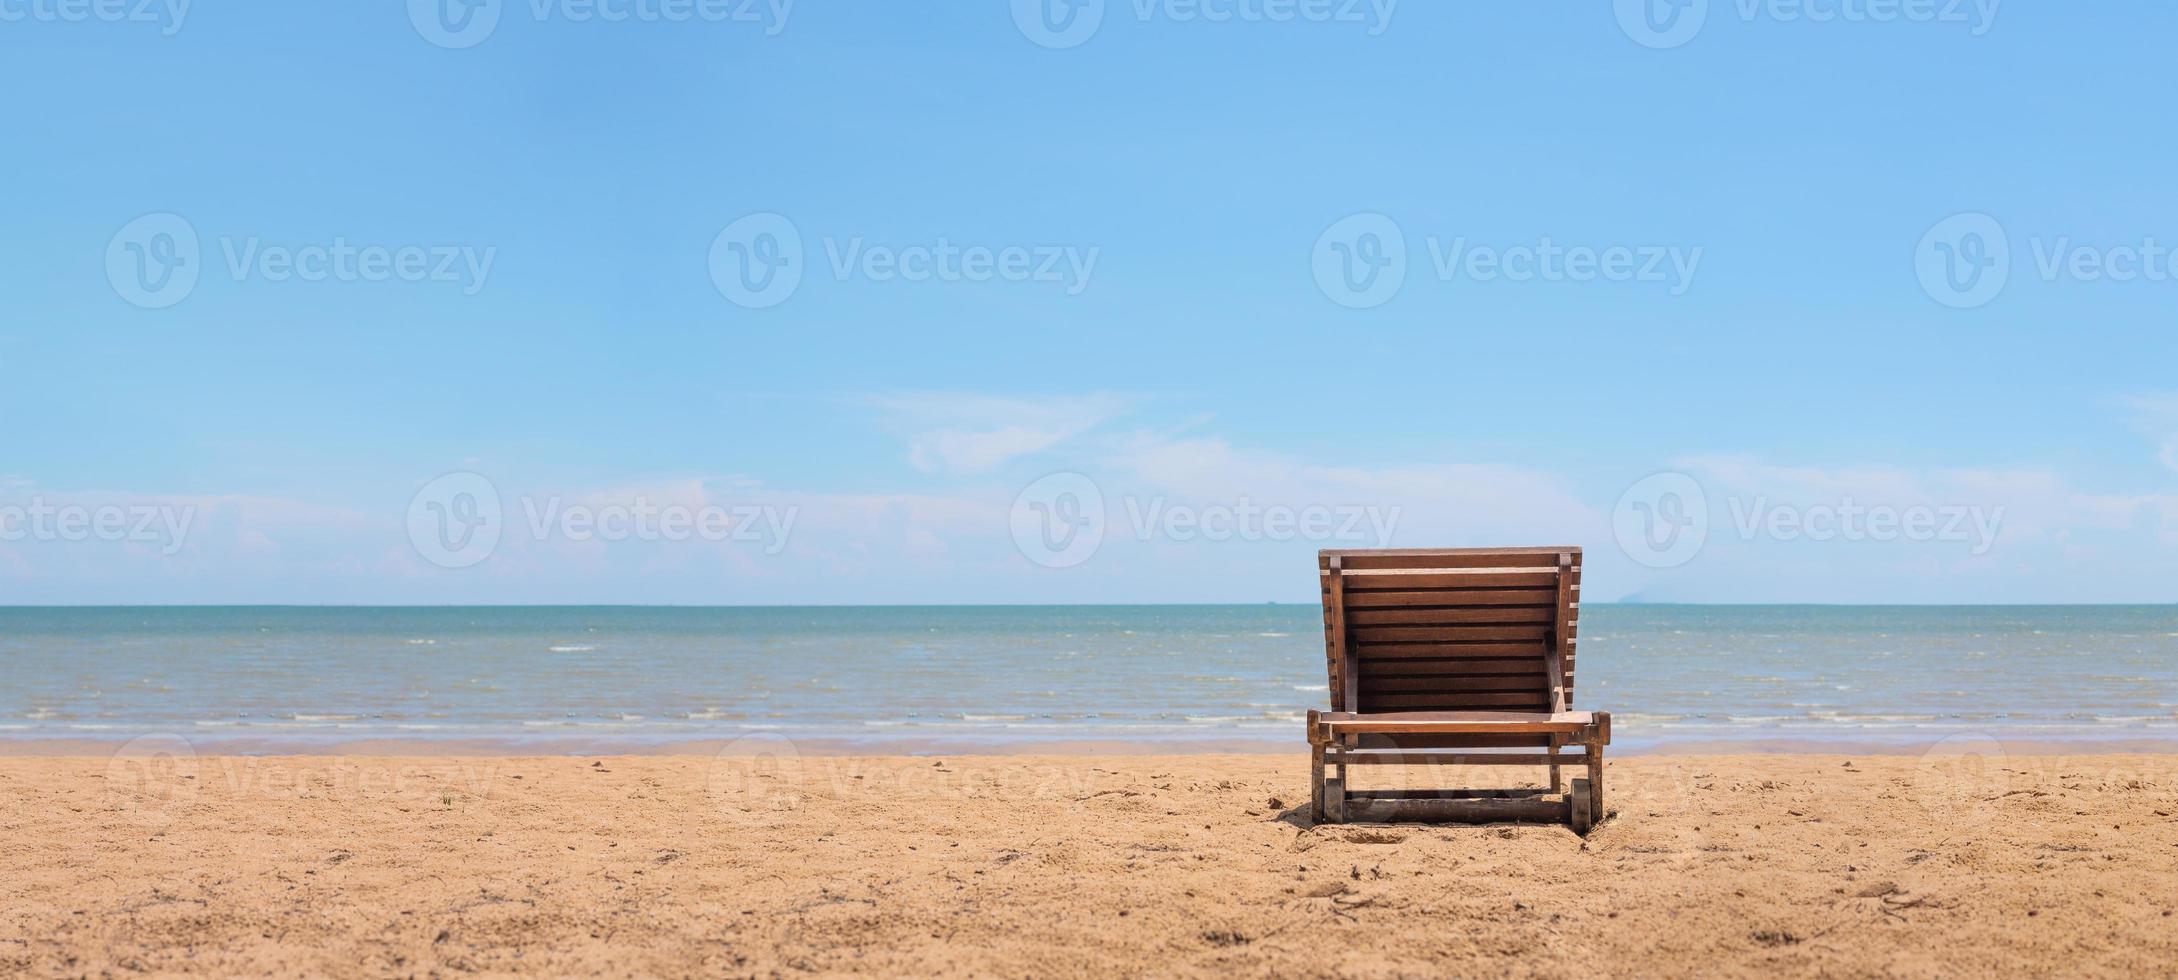 Liegestuhl am Strand mit deutlich blauem Himmelshintergrund foto